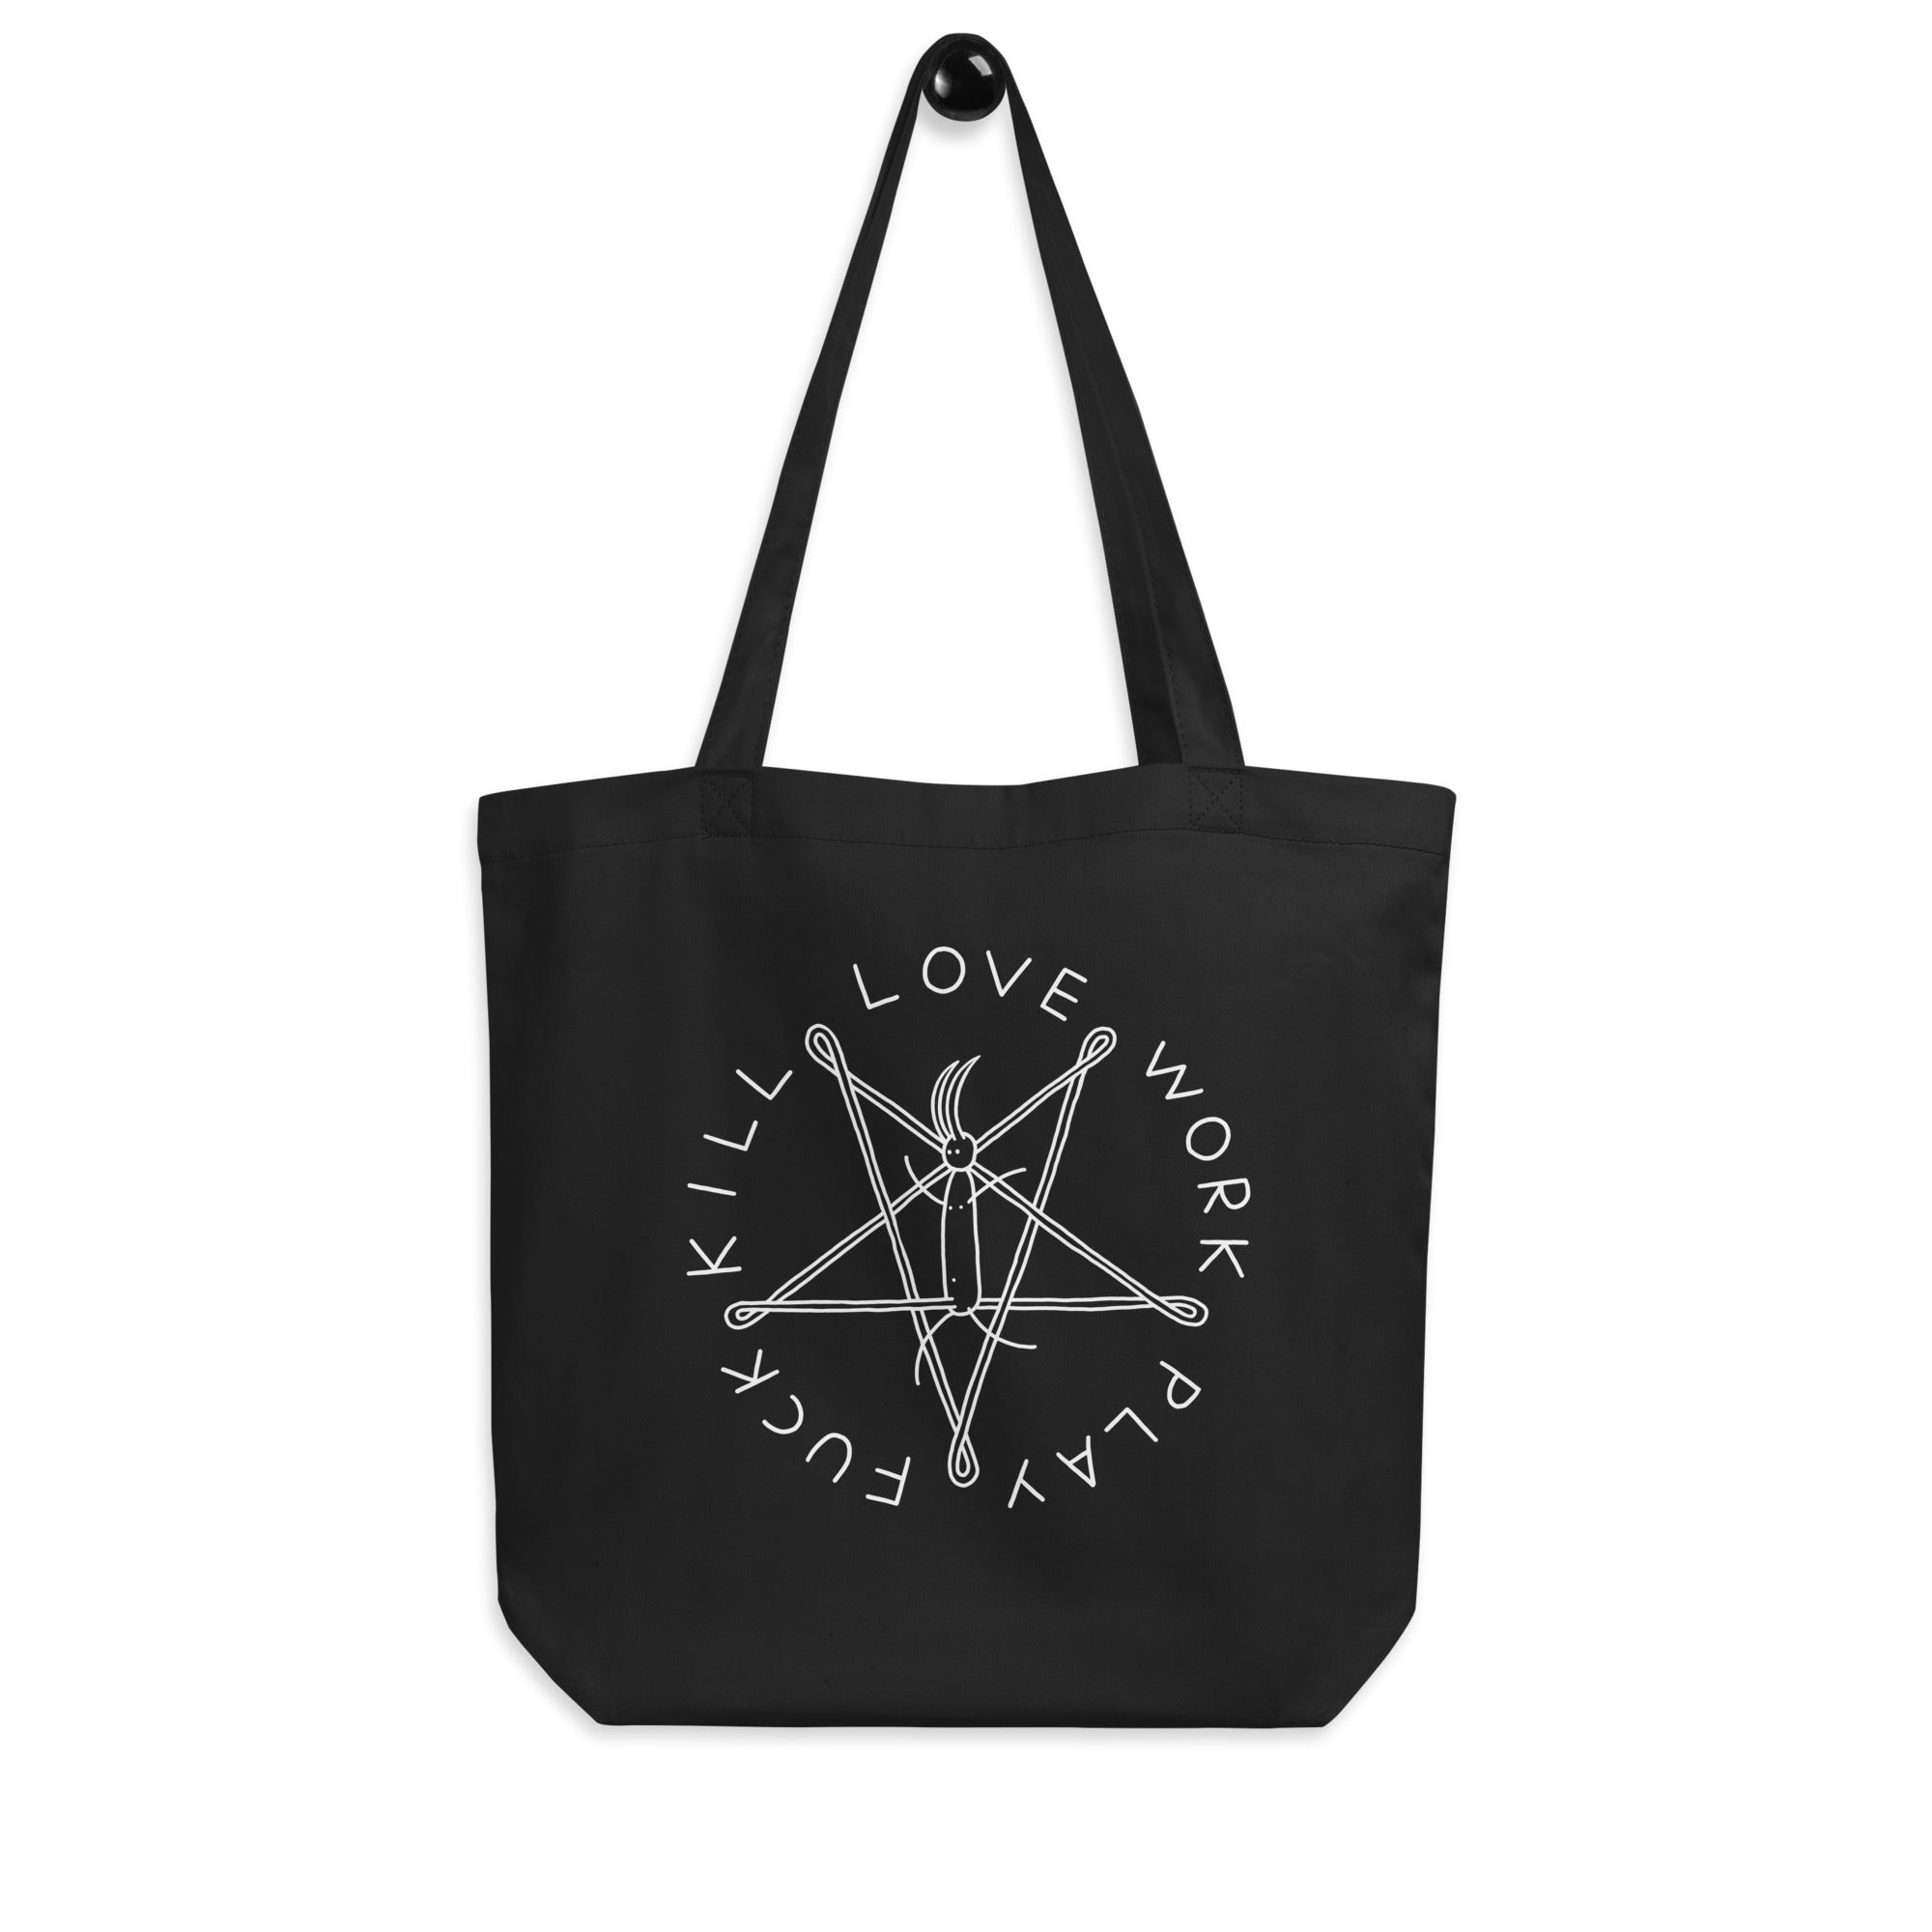 Love work - Tote Bag